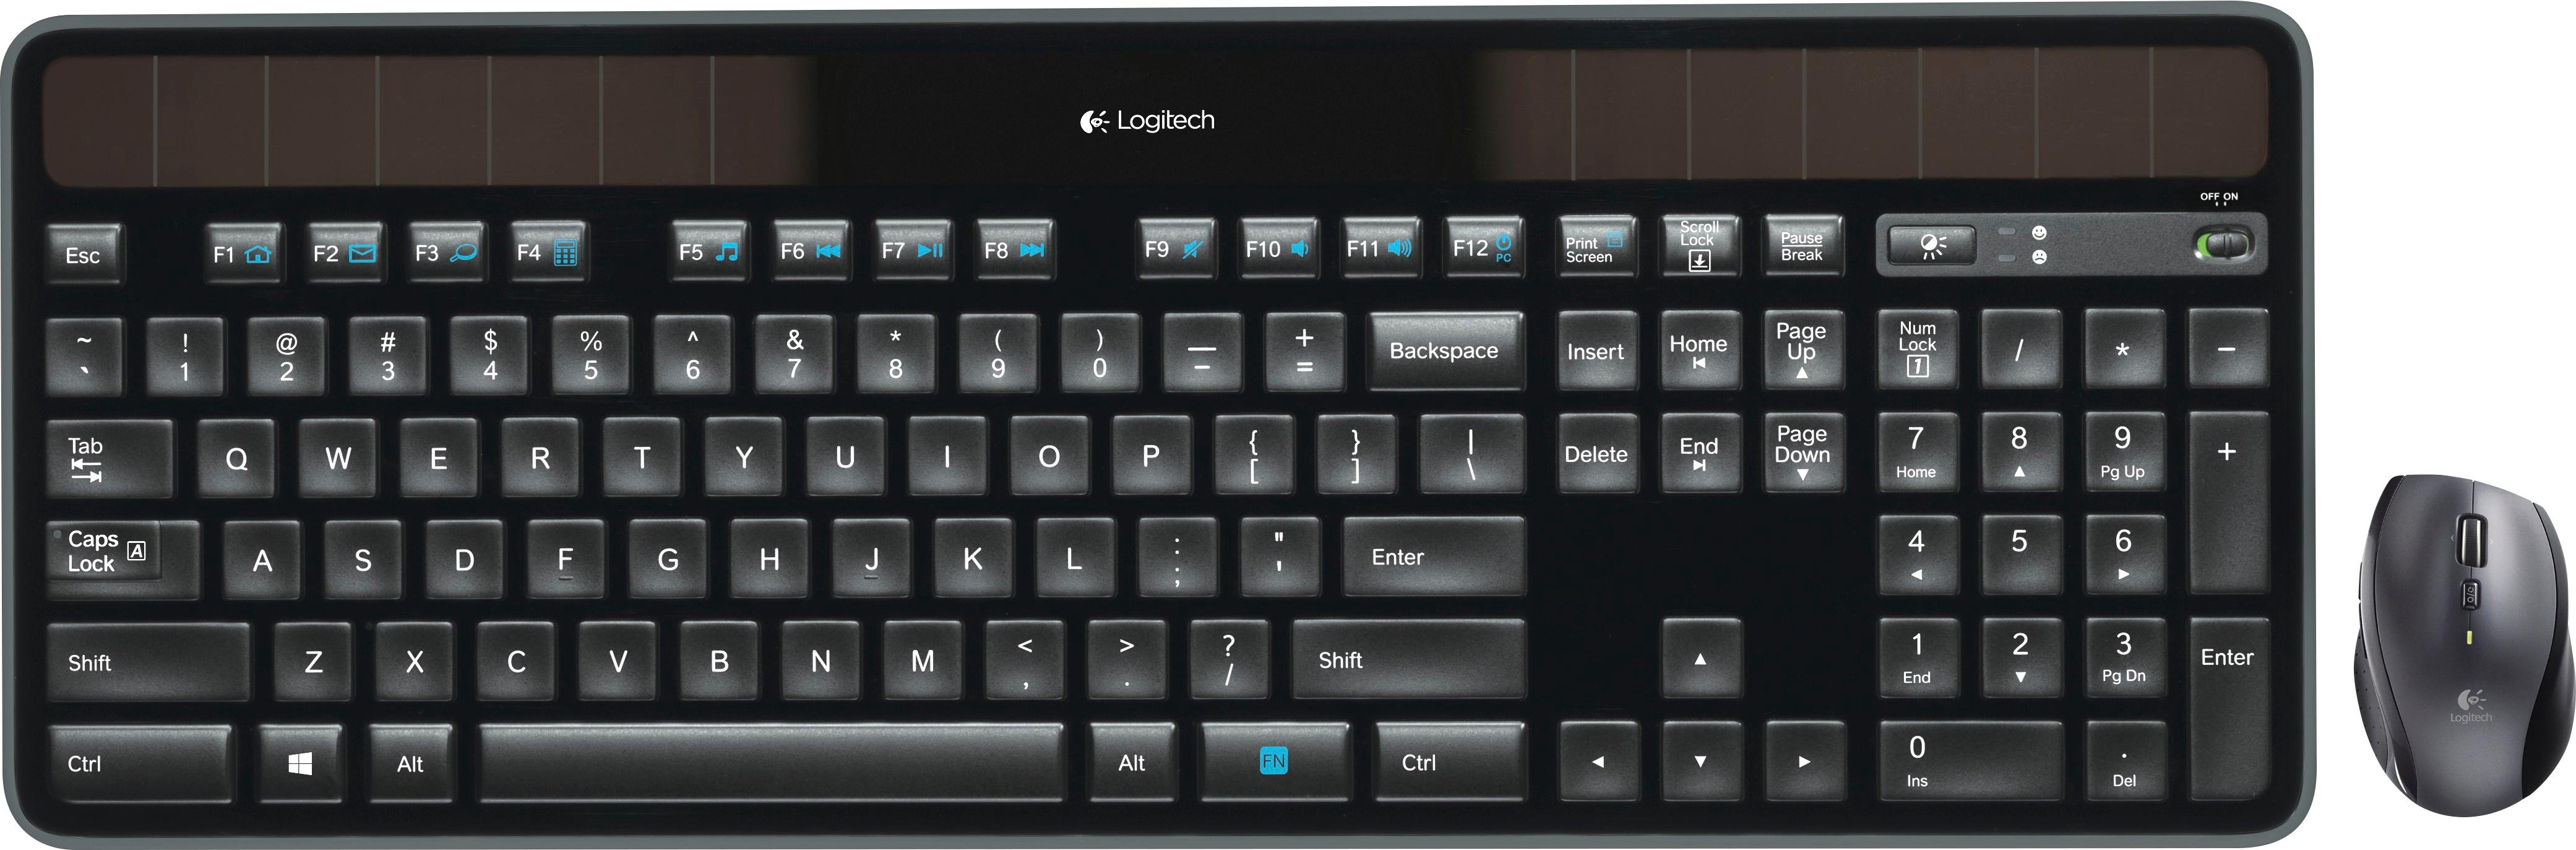 Logitech 920-010994  Logitech Signature MK650 Combo For Business clavier  Souris incluse Bluetooth QWERTZ Allemand Graphite